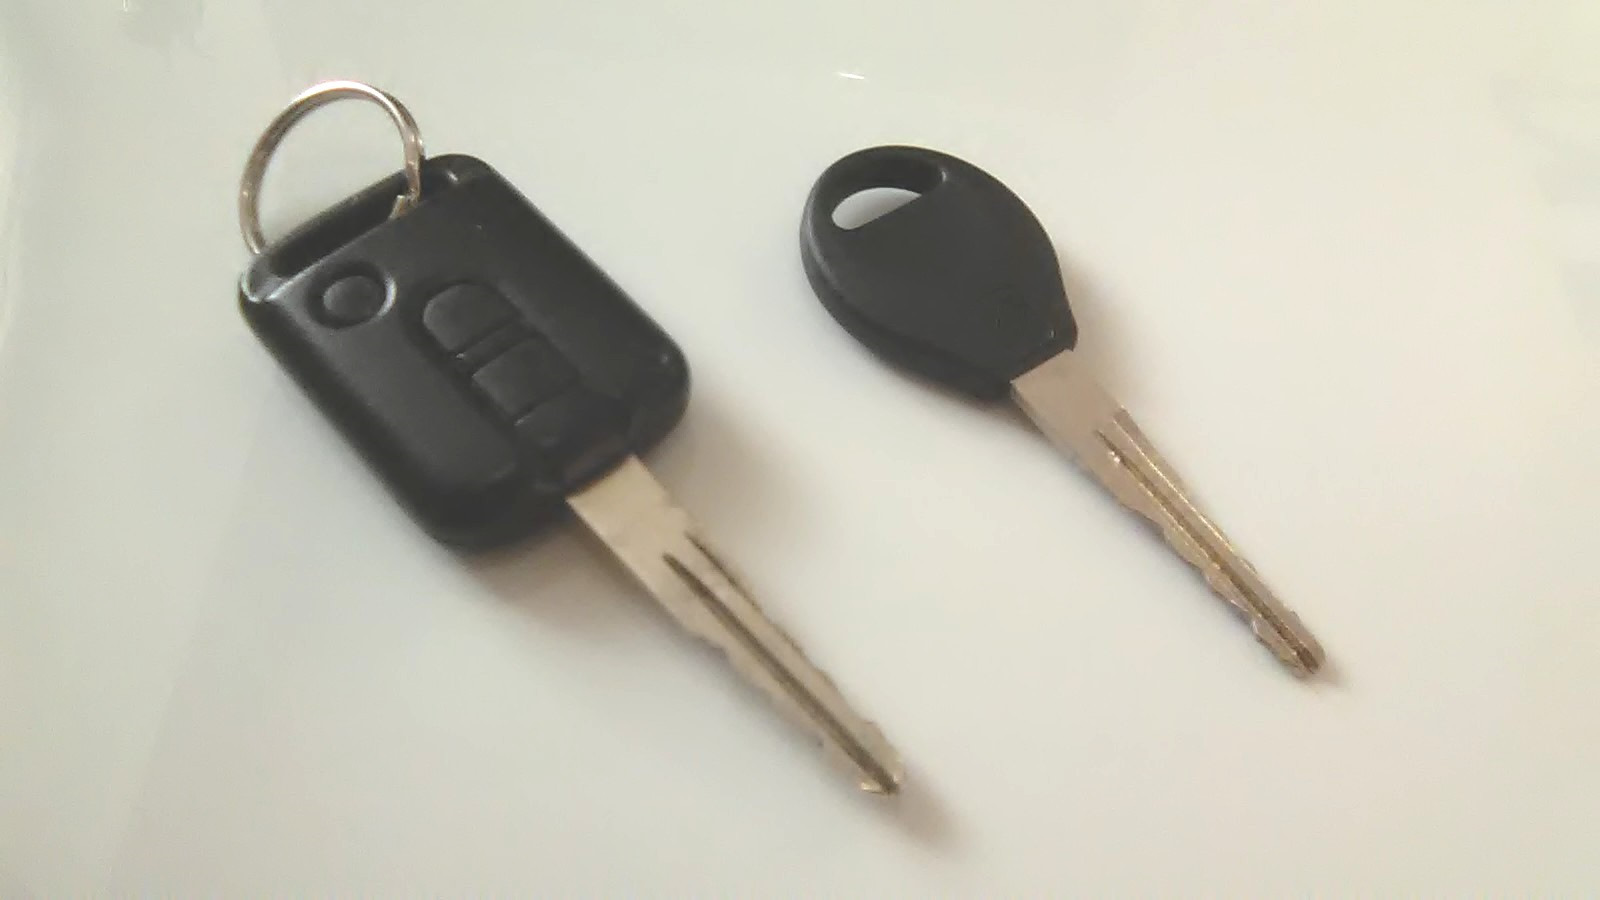 Ключ Ниссан вингроуд 2000 год с тремя кнопками. Дубликат ключ Титан. Ключи Nissan Wingroad 2003. Дубликат ключа без кнопок.